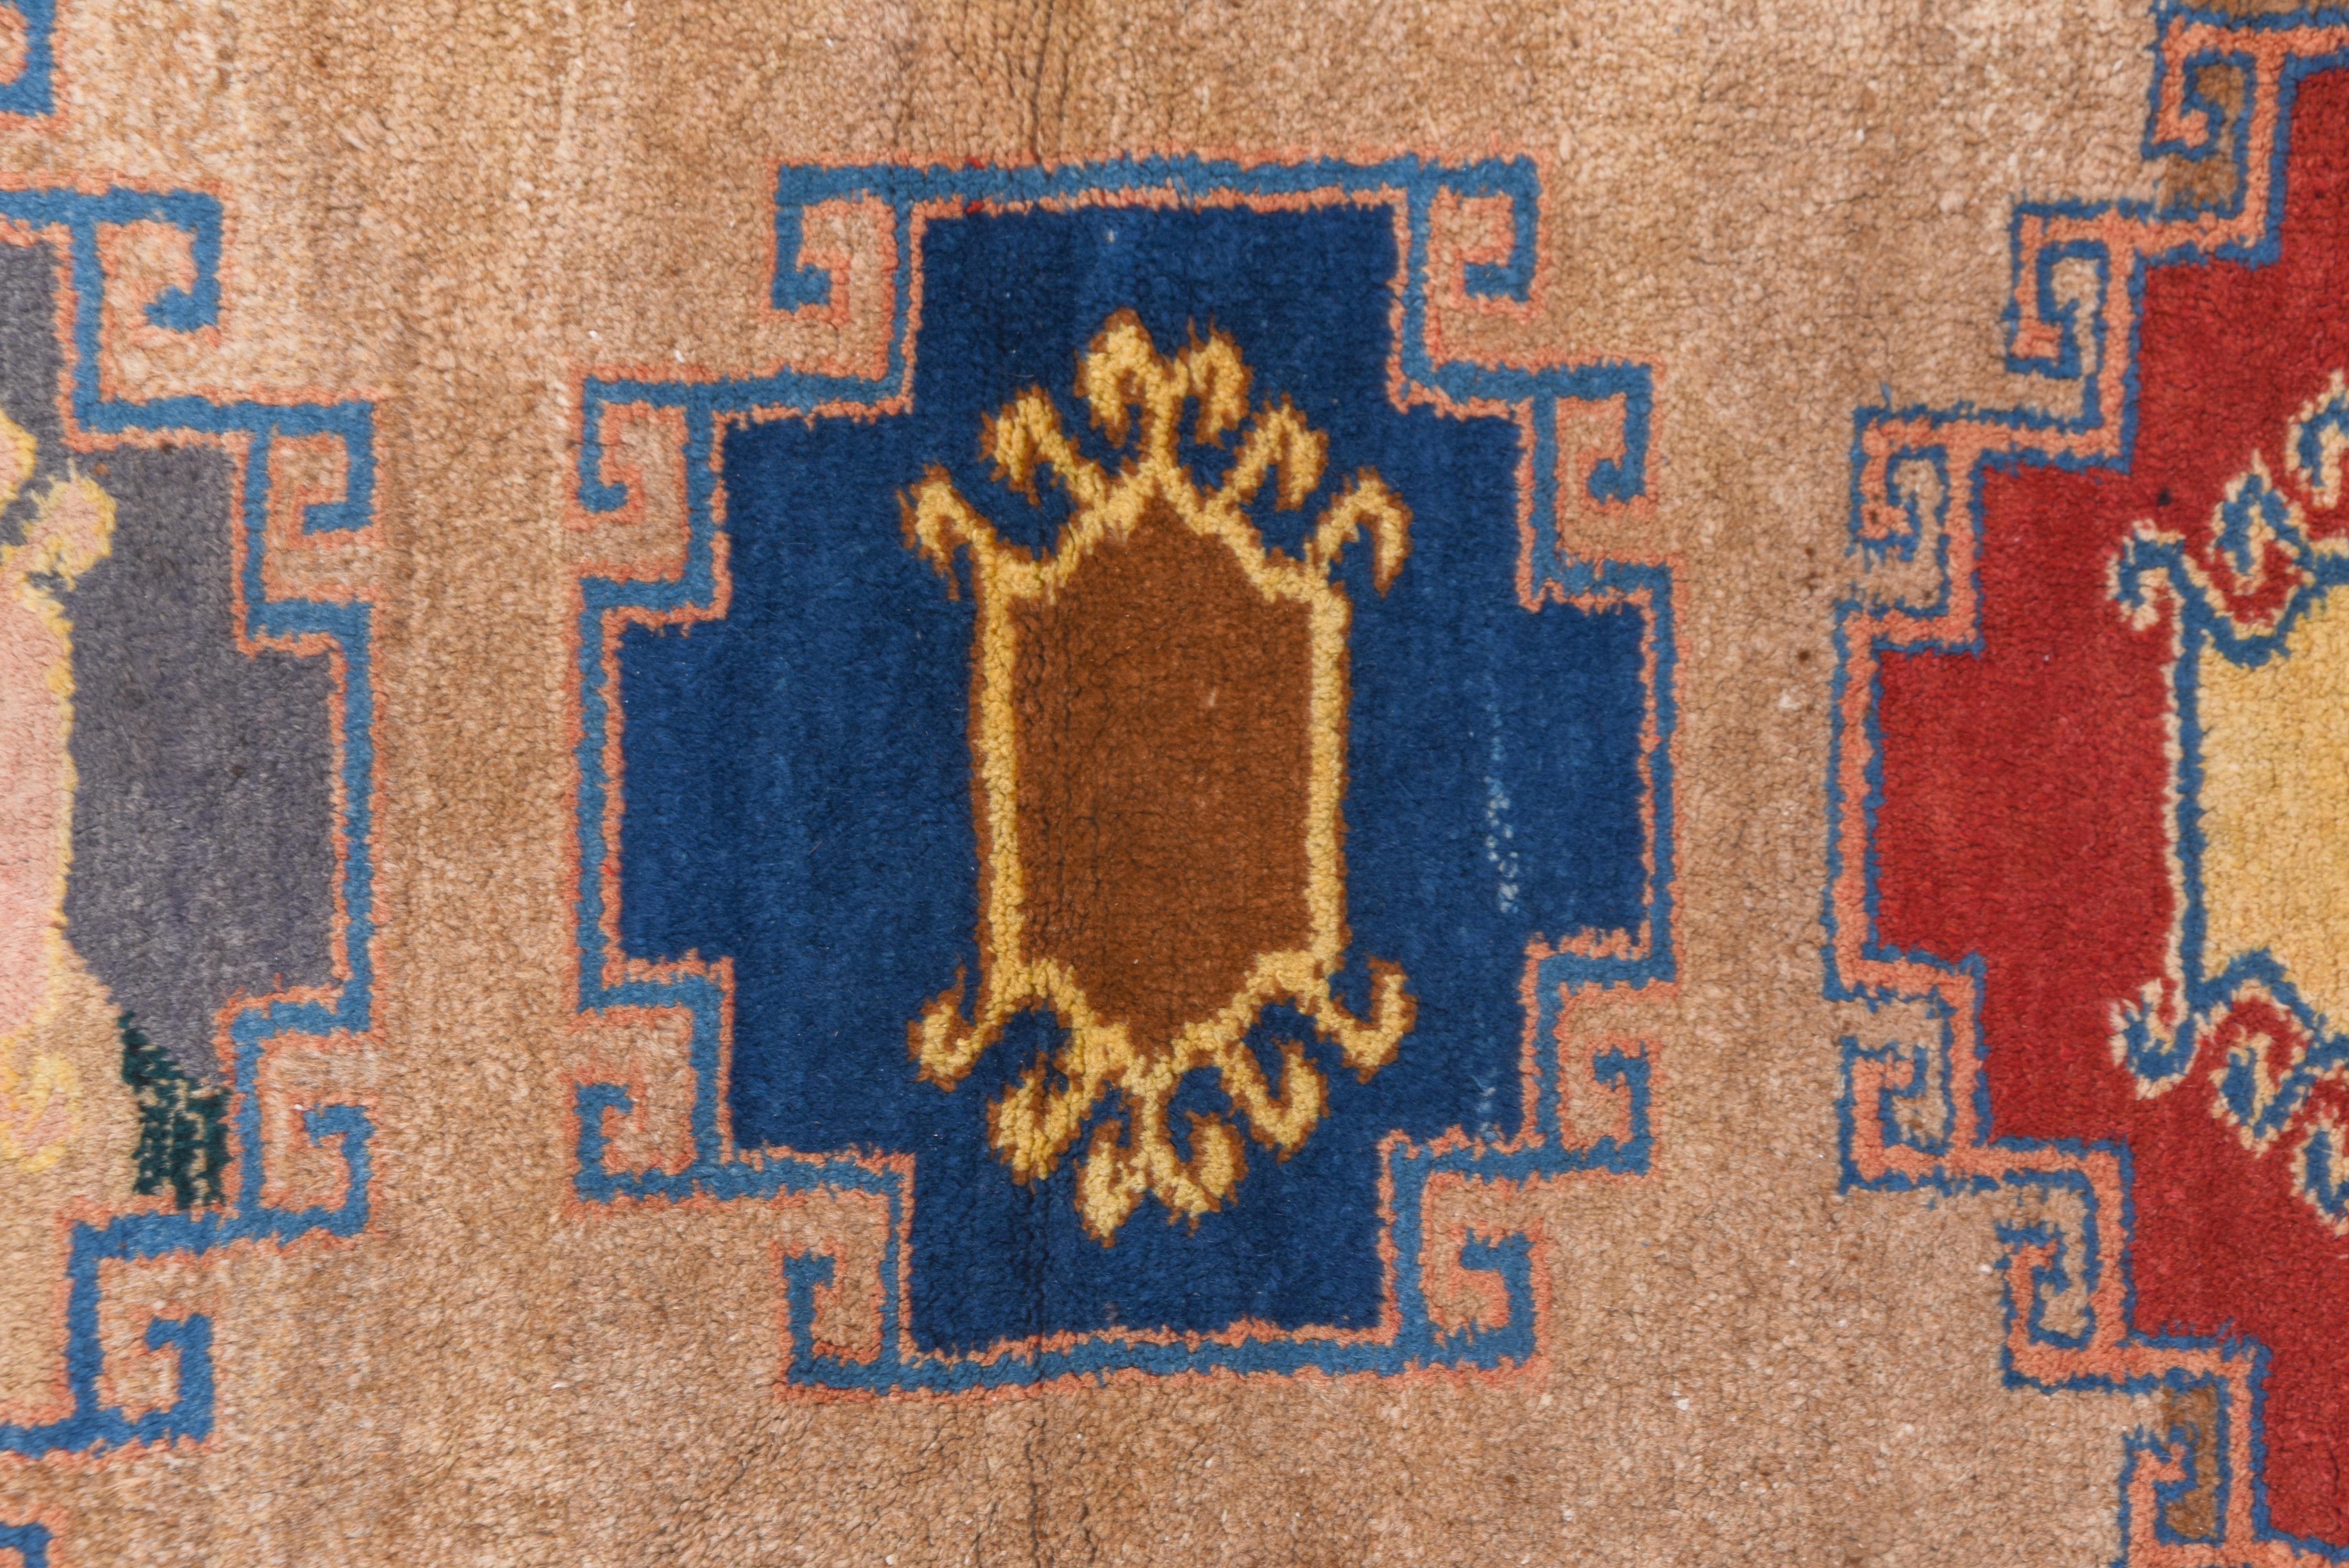 Das teilweise rote Feld bricht aus und zeigt fünf seitlich eingehängte Memling-Gullys in Königsblau, Hellblau, Rot, Stroh und Türkis. Kräftig gezeichnet, ohne aufdringliche, weniger wichtige Elemente.